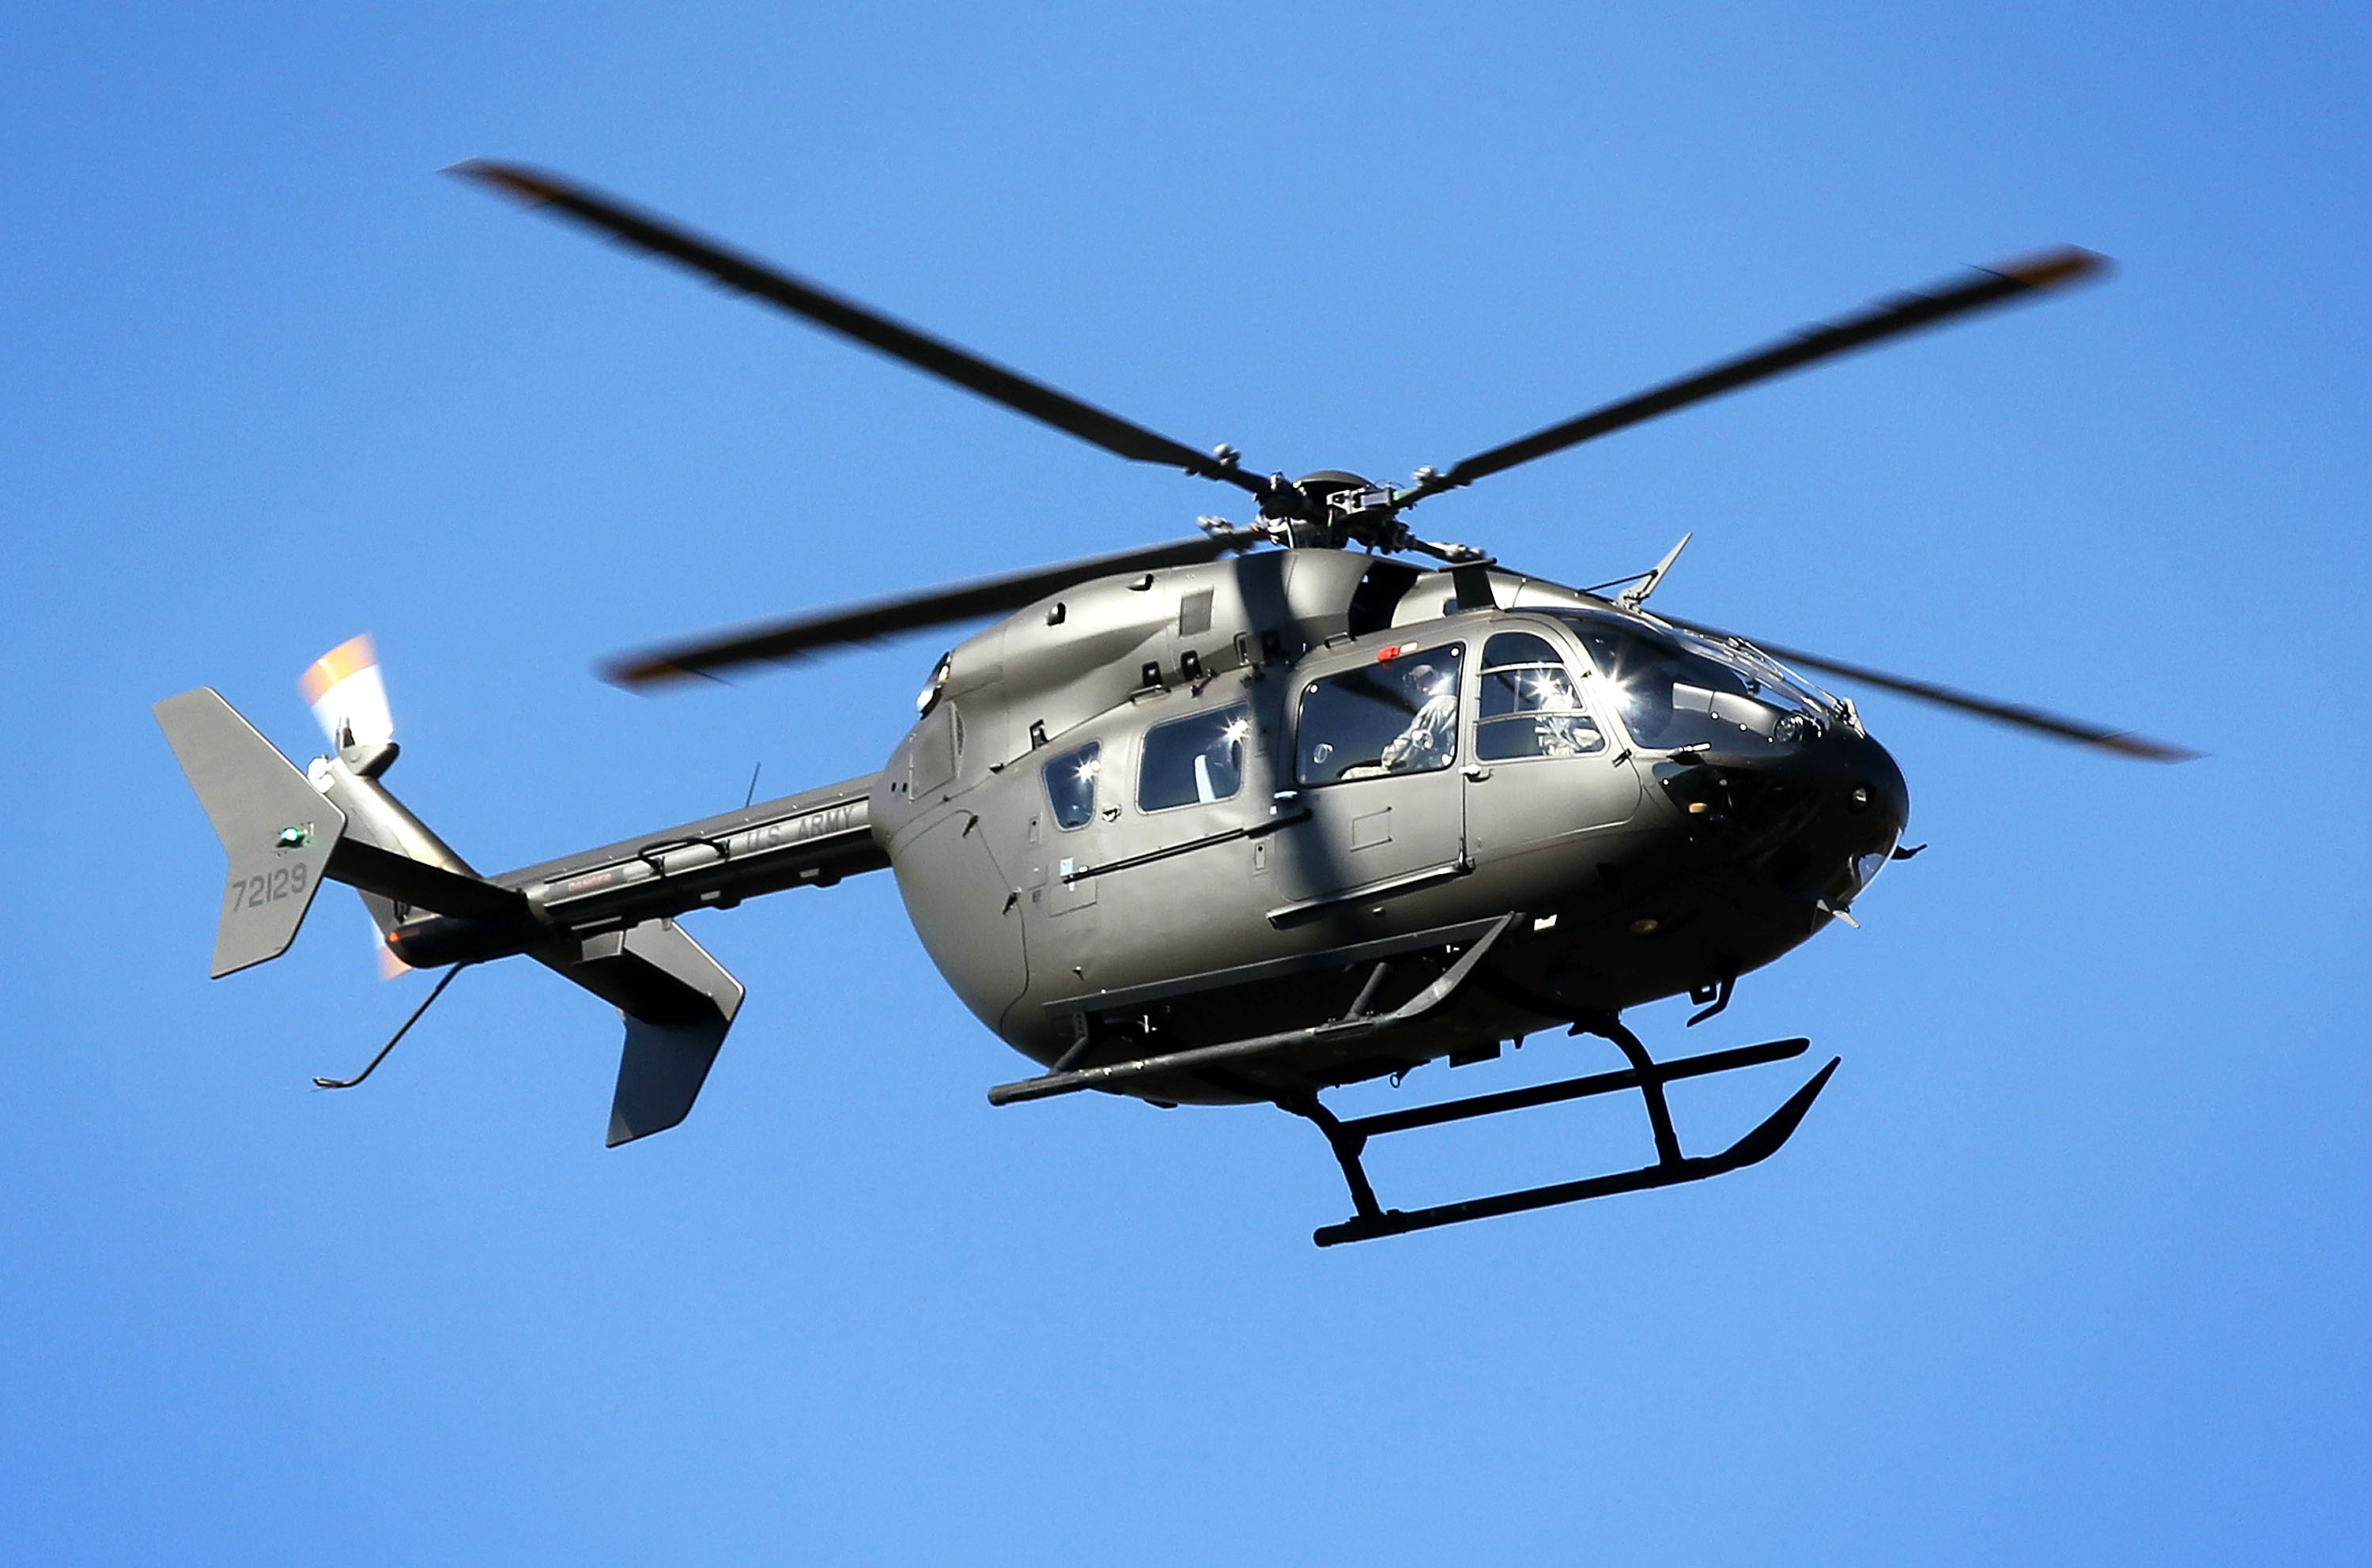 Der UH-72 Lakota-Hubschrauber ist als leichtes Mehrzweckflugzeug bekannt, das weltweit für eine Reihe von Aufgaben eingesetzt wird, vom Notfalltransport bis hin zu Geschäftsreisen